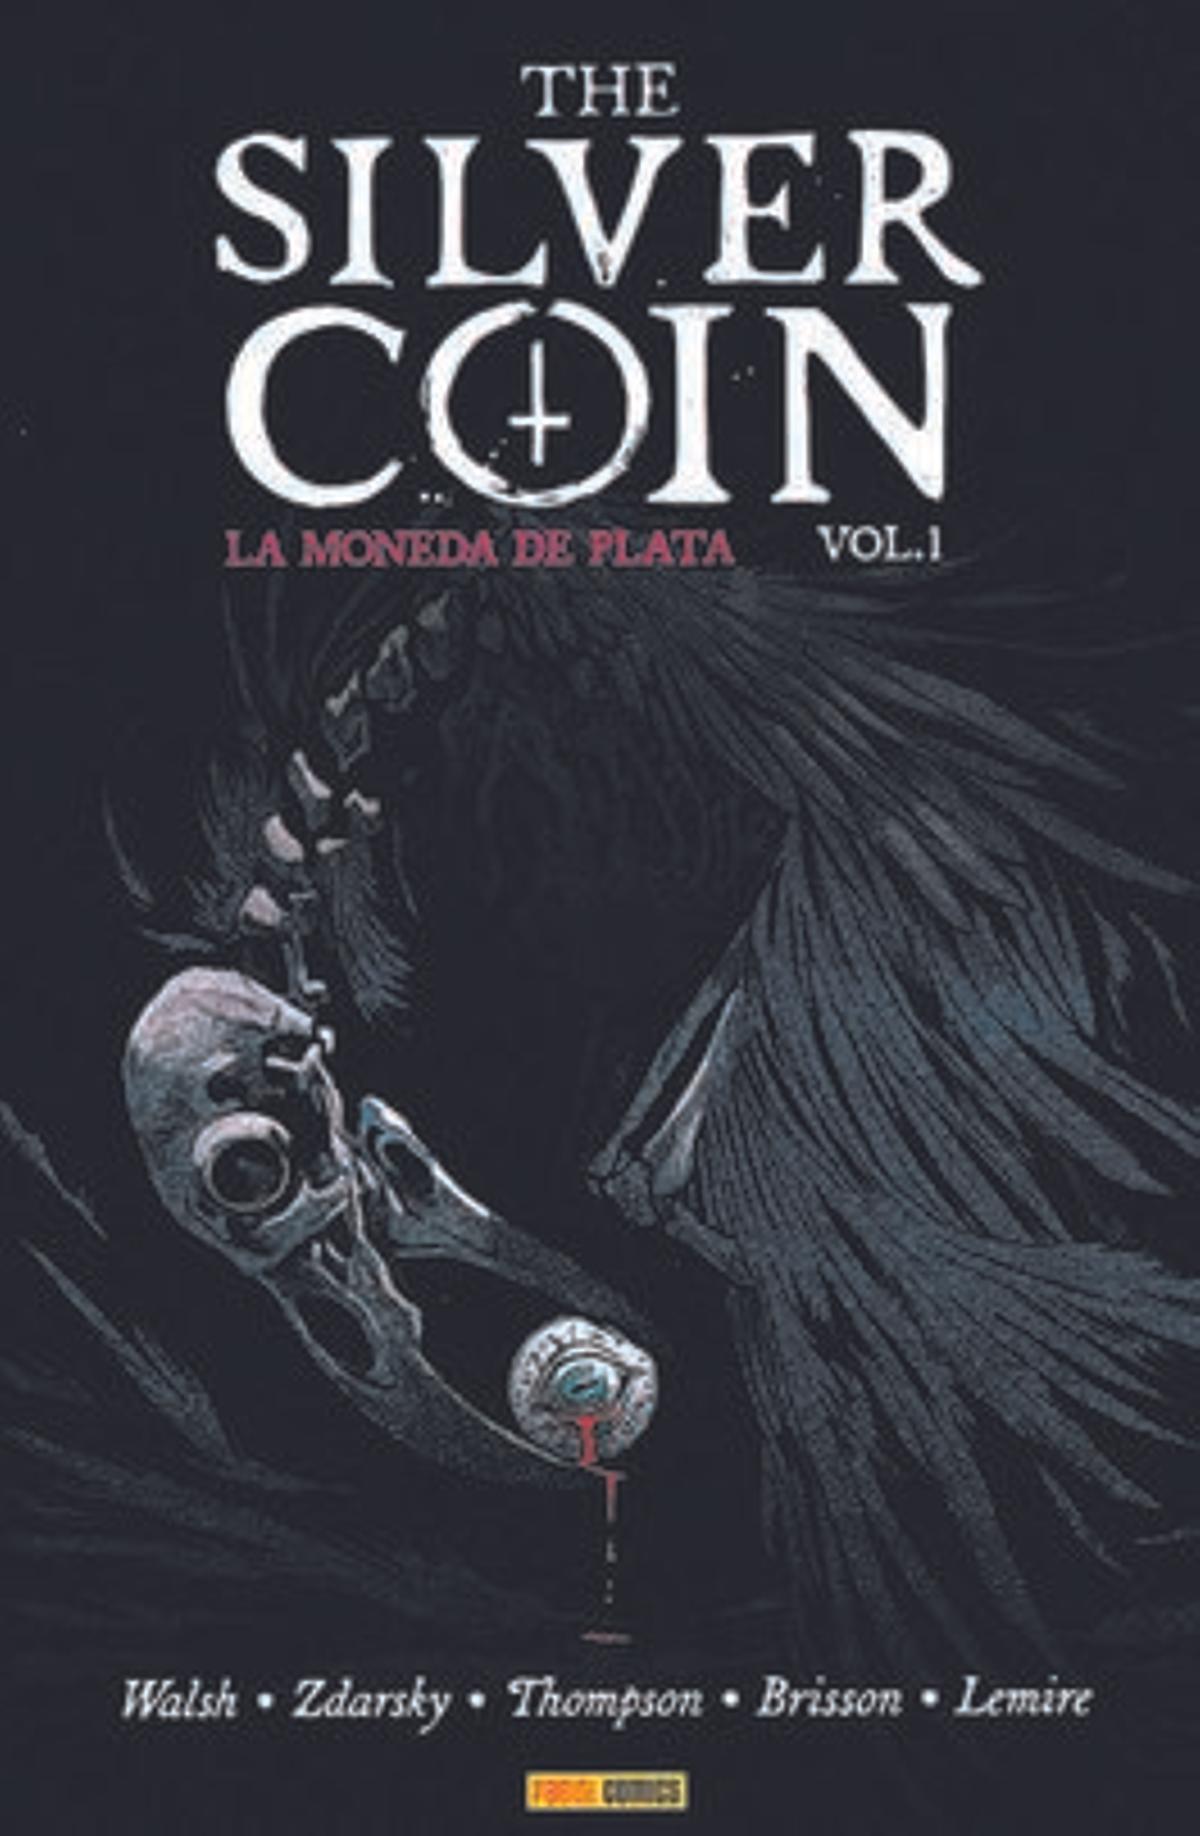 Portada del libro 'La moneda de plata', de Michael Walsh, Kelly Thompson y otros. Panini Comics, 128 páginas, 20 euros.